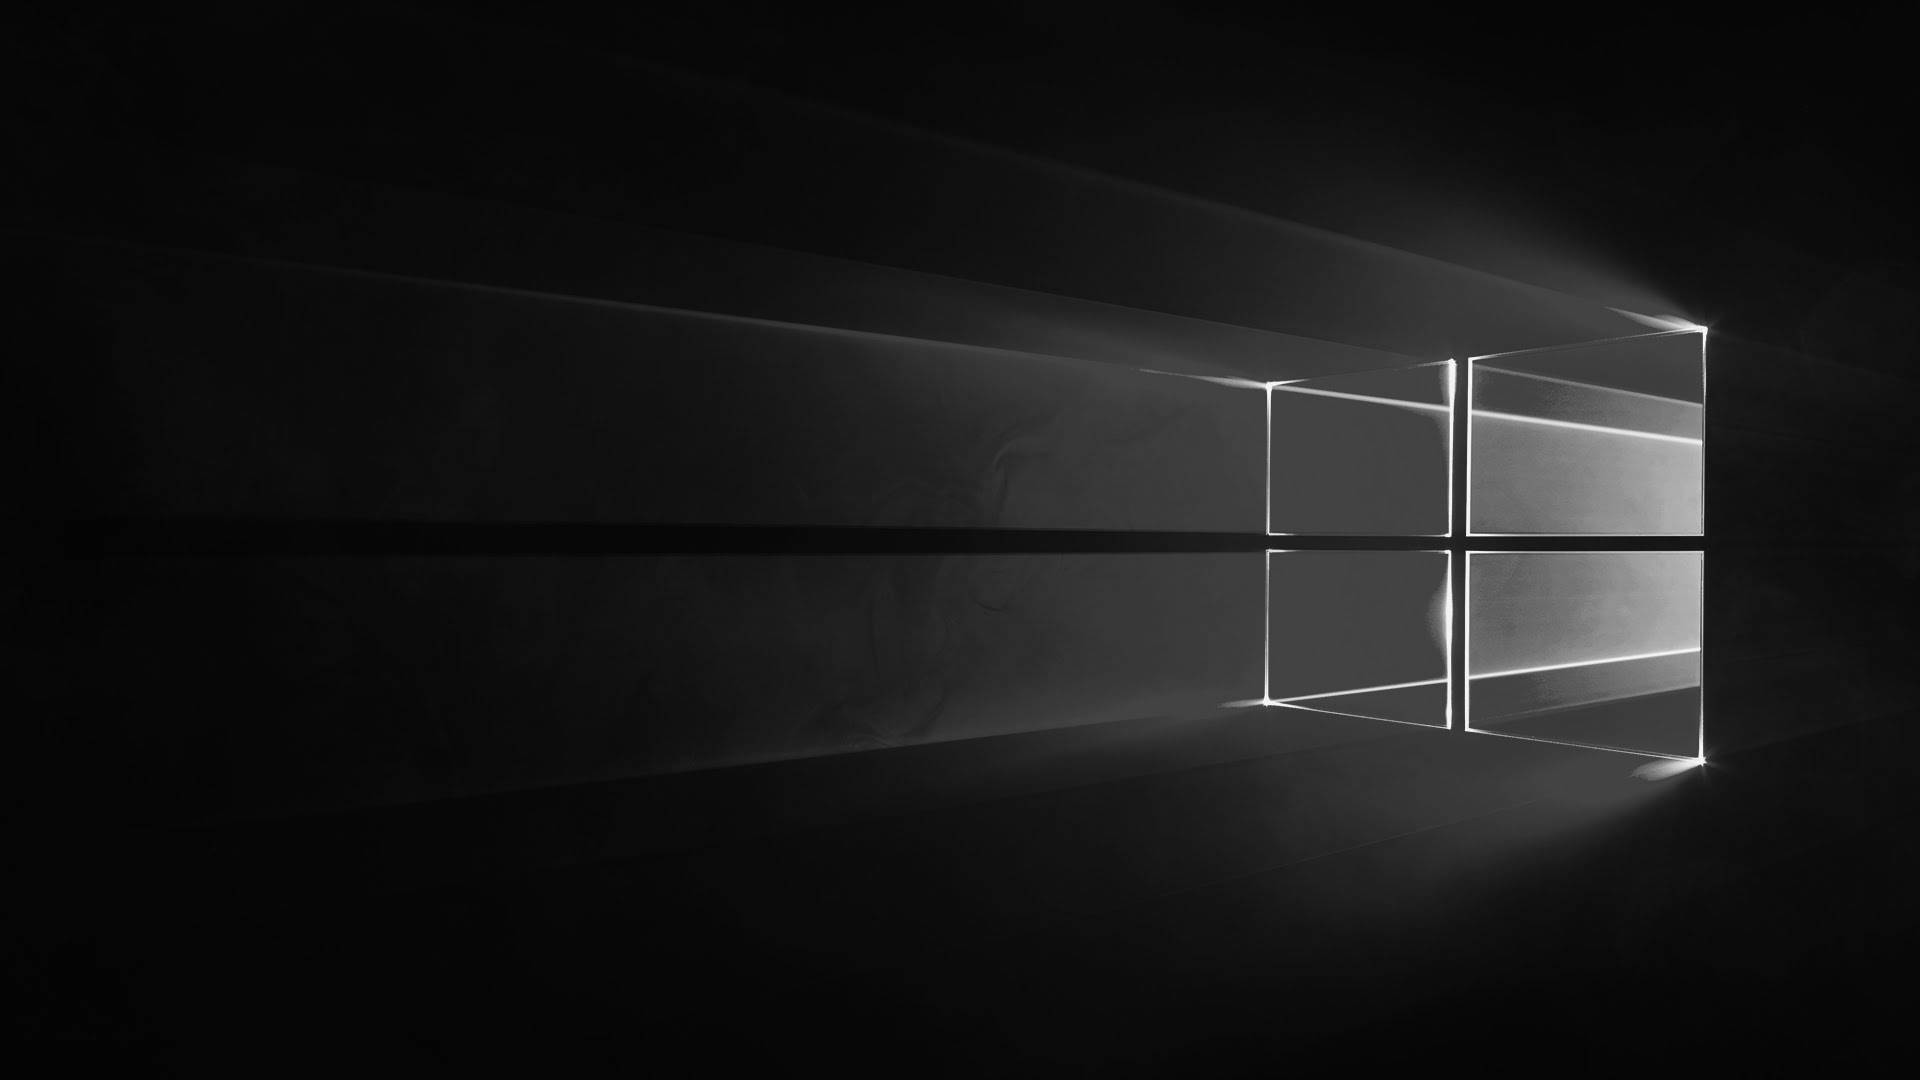 Logotipode Windows 10 Hd En Negro Fondo de pantalla